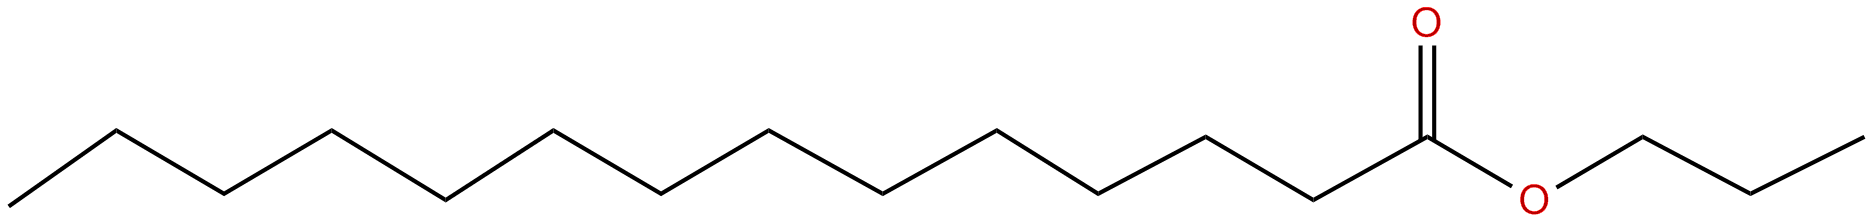 Image of propyl tetradecanoate